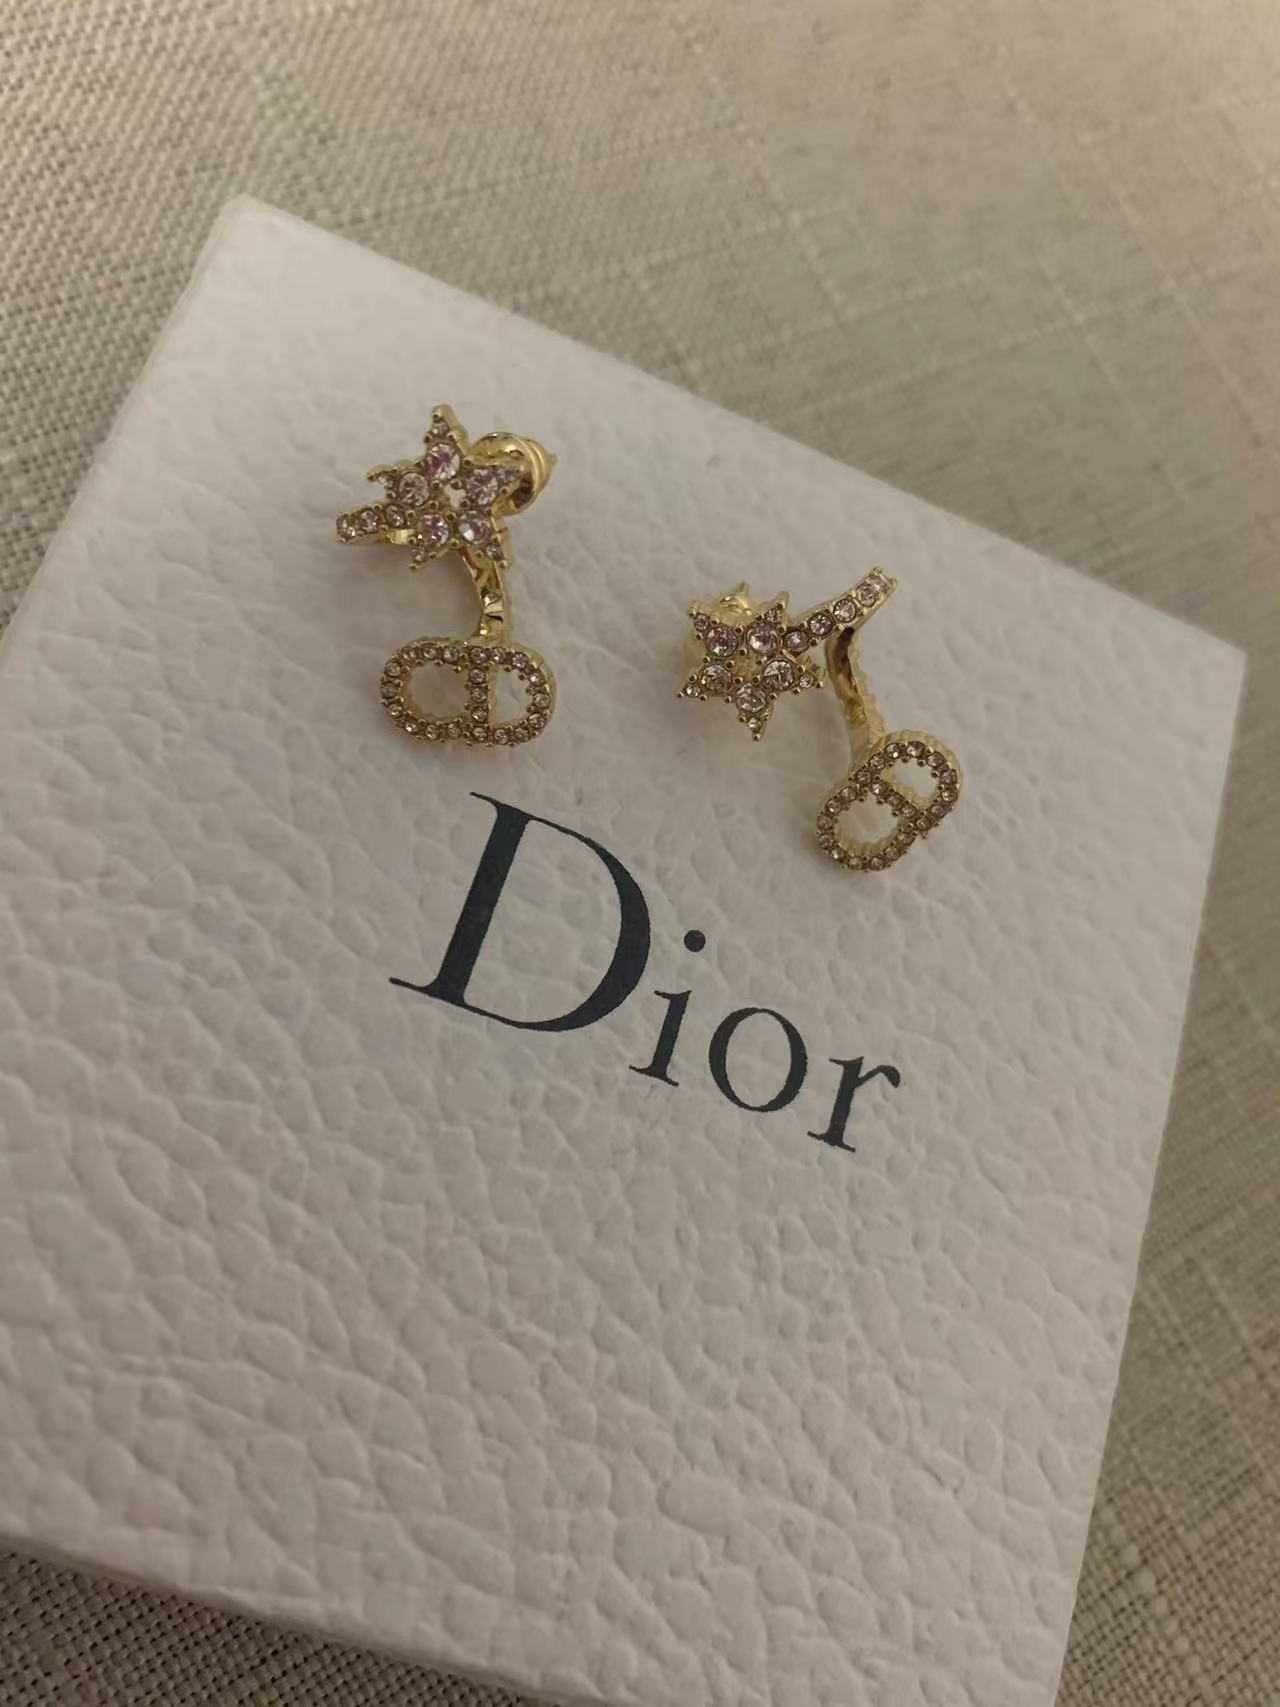 Exquisite earrings